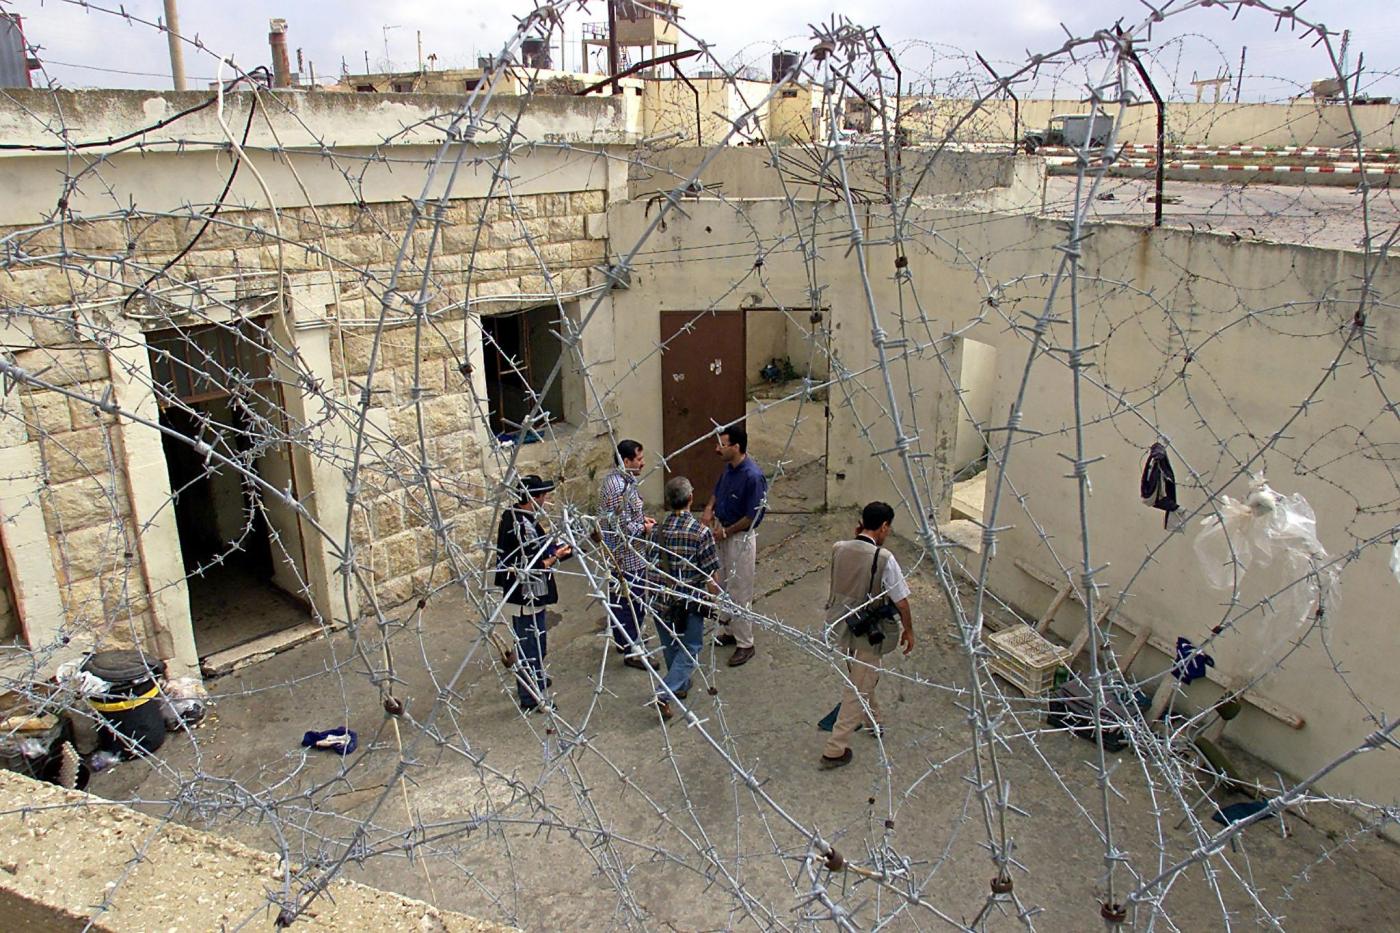 Vue de la cour de la prison de Khyam le 24 mai 2000, un jour après la libération des détenus par une foule ayant fait irruption dans son enceinte (AFP)